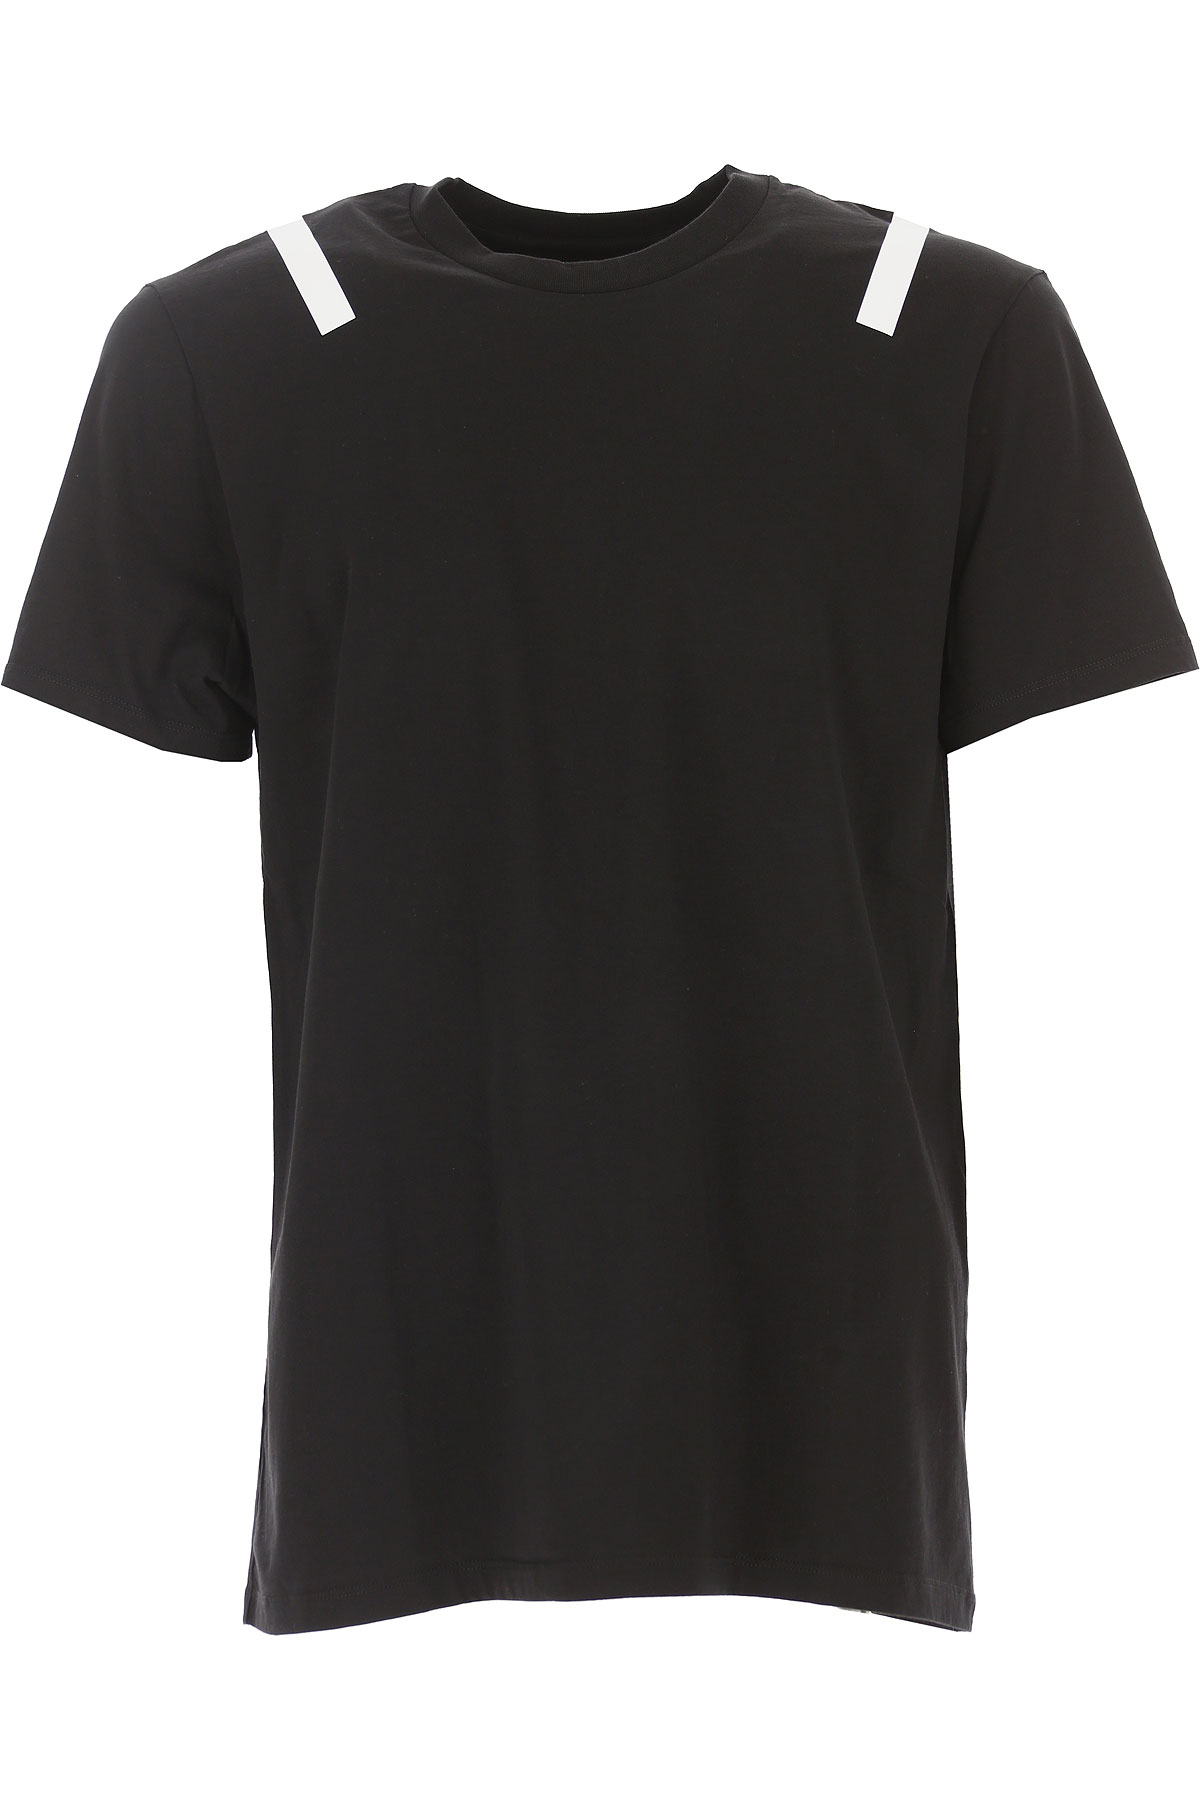 Neil Barrett T-shirt Homme, Noir, Coton, 2017, L M S XL